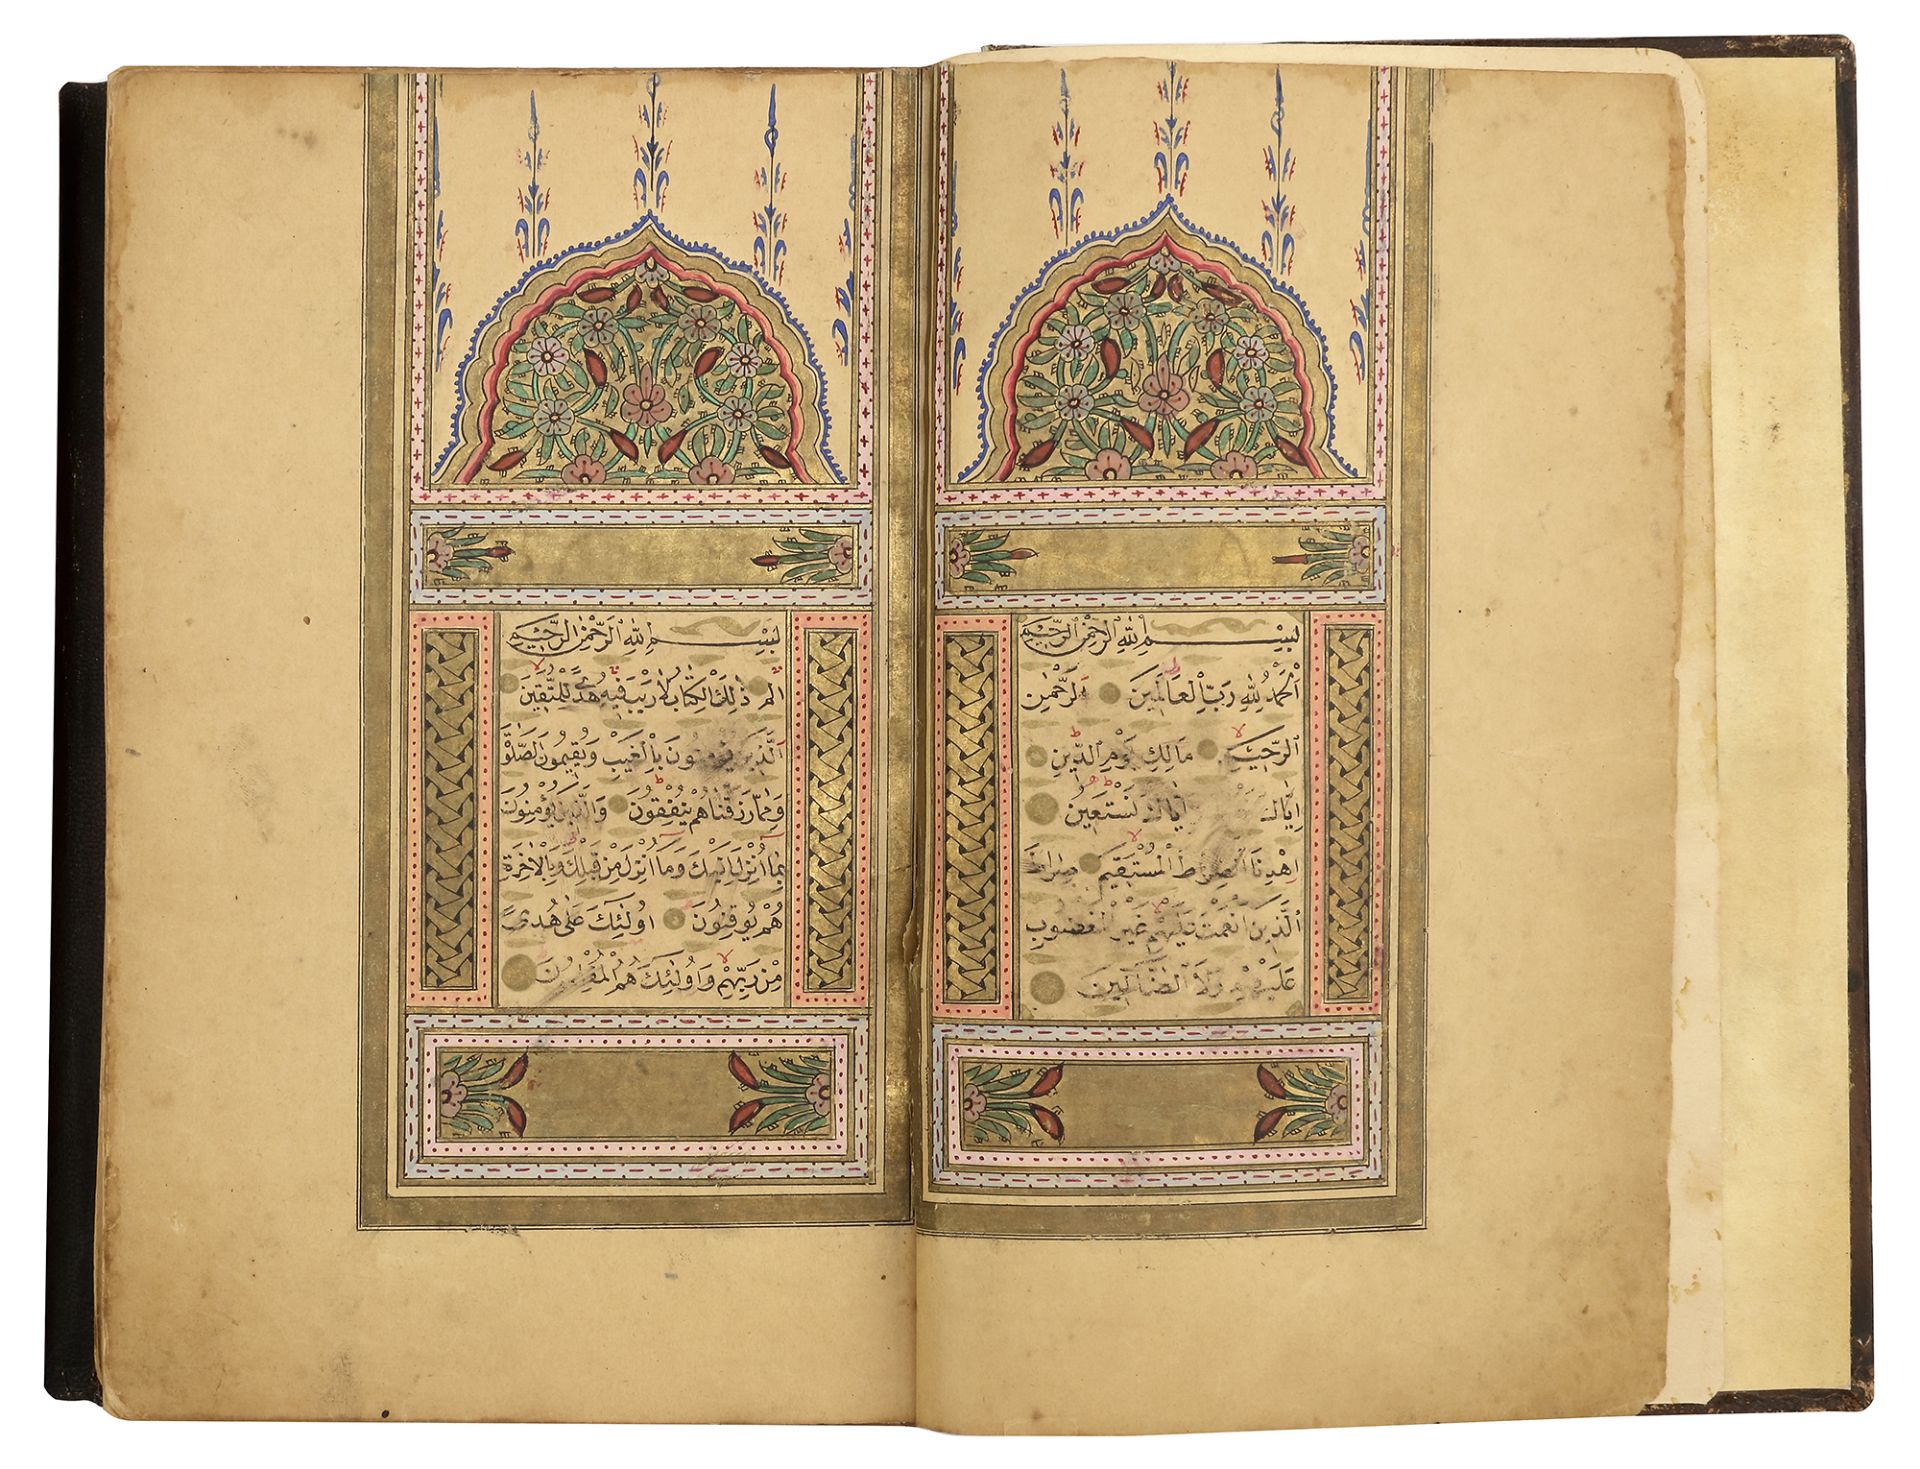 A FINE OTTOMAN QURAN, TURKEY, EDIRNE, WRITTEN BY HUSSEIN AL-HUSNA IBN AHMED AL-ADRUNI, DATED 1287 AH - Bild 2 aus 8